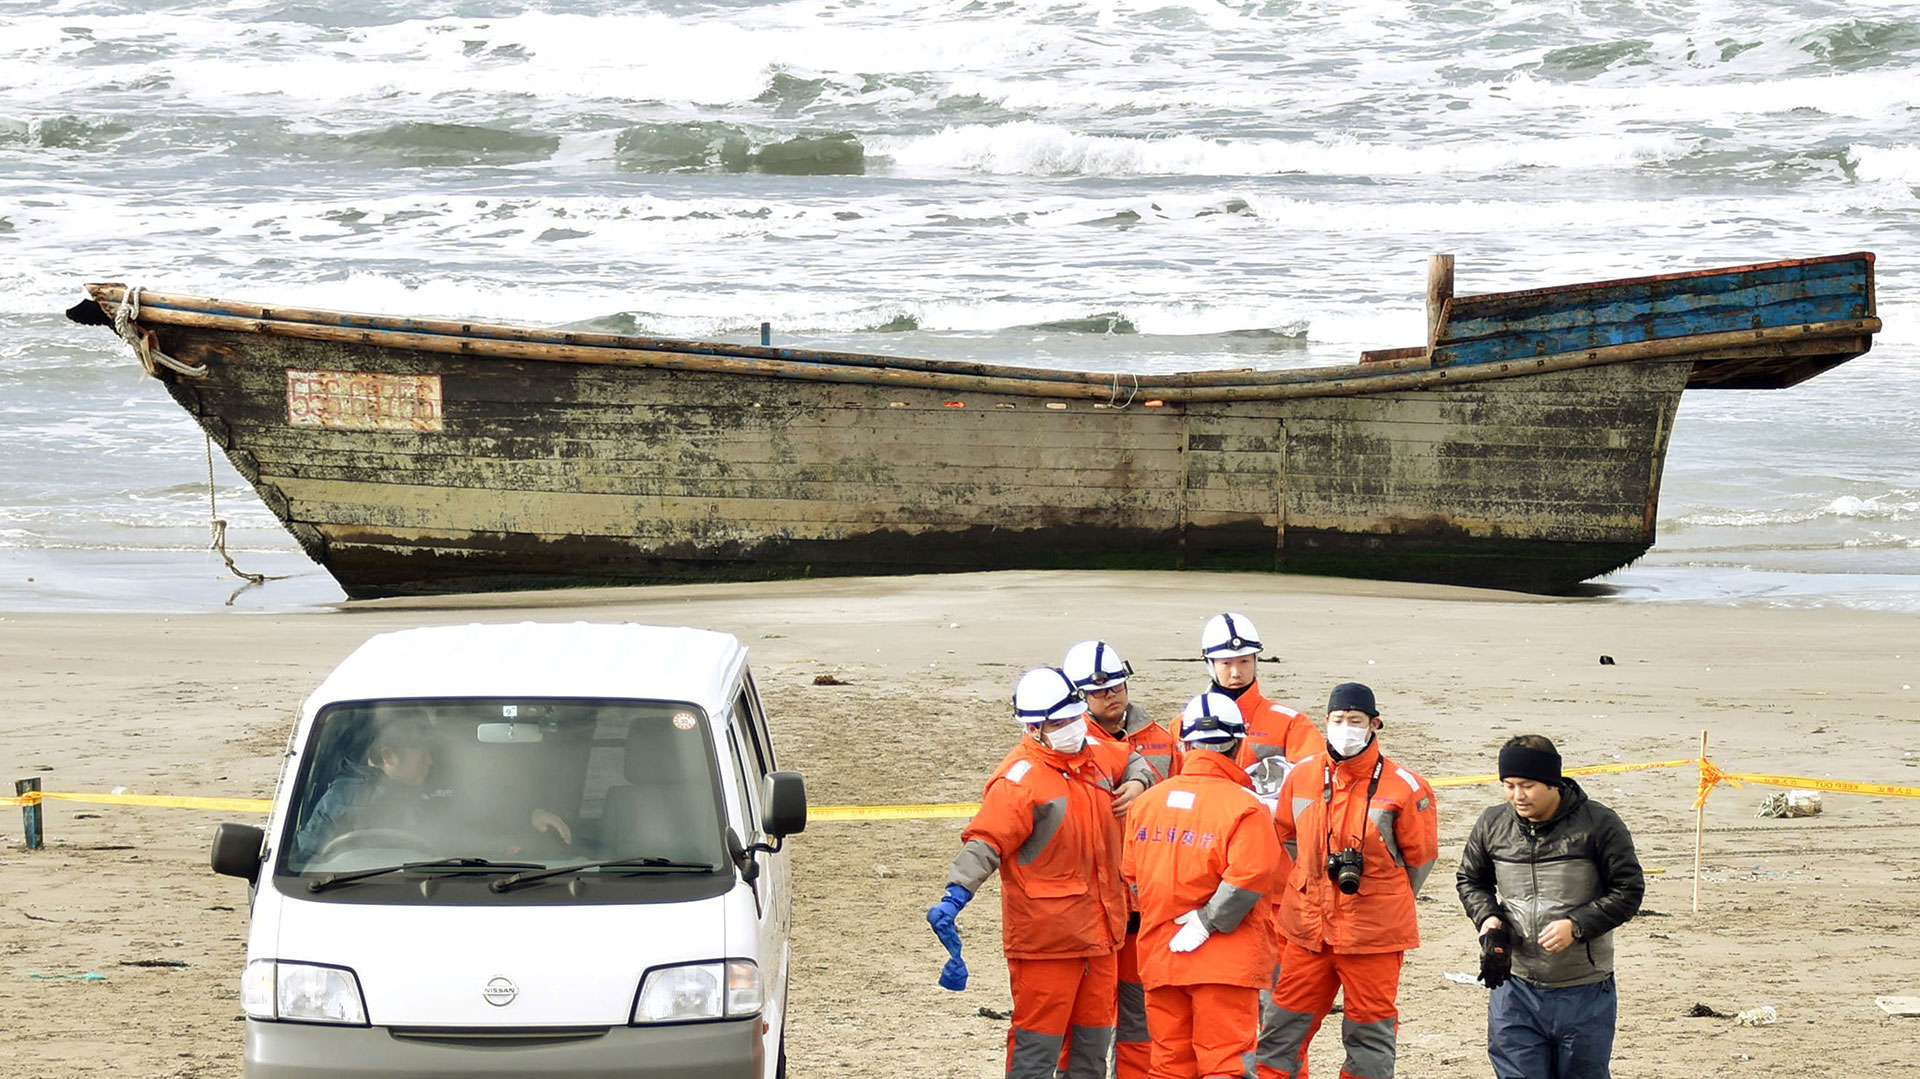 El 27 de noviembre de 2017, la Guardia Costera japonesa encontró un bote de madera, que llegó a tierra con ocho cuerpos parcialmente esqueléticos, en Oga, Prefectura de Akita, Japón (Kyodo a través del archivo de Reuters)